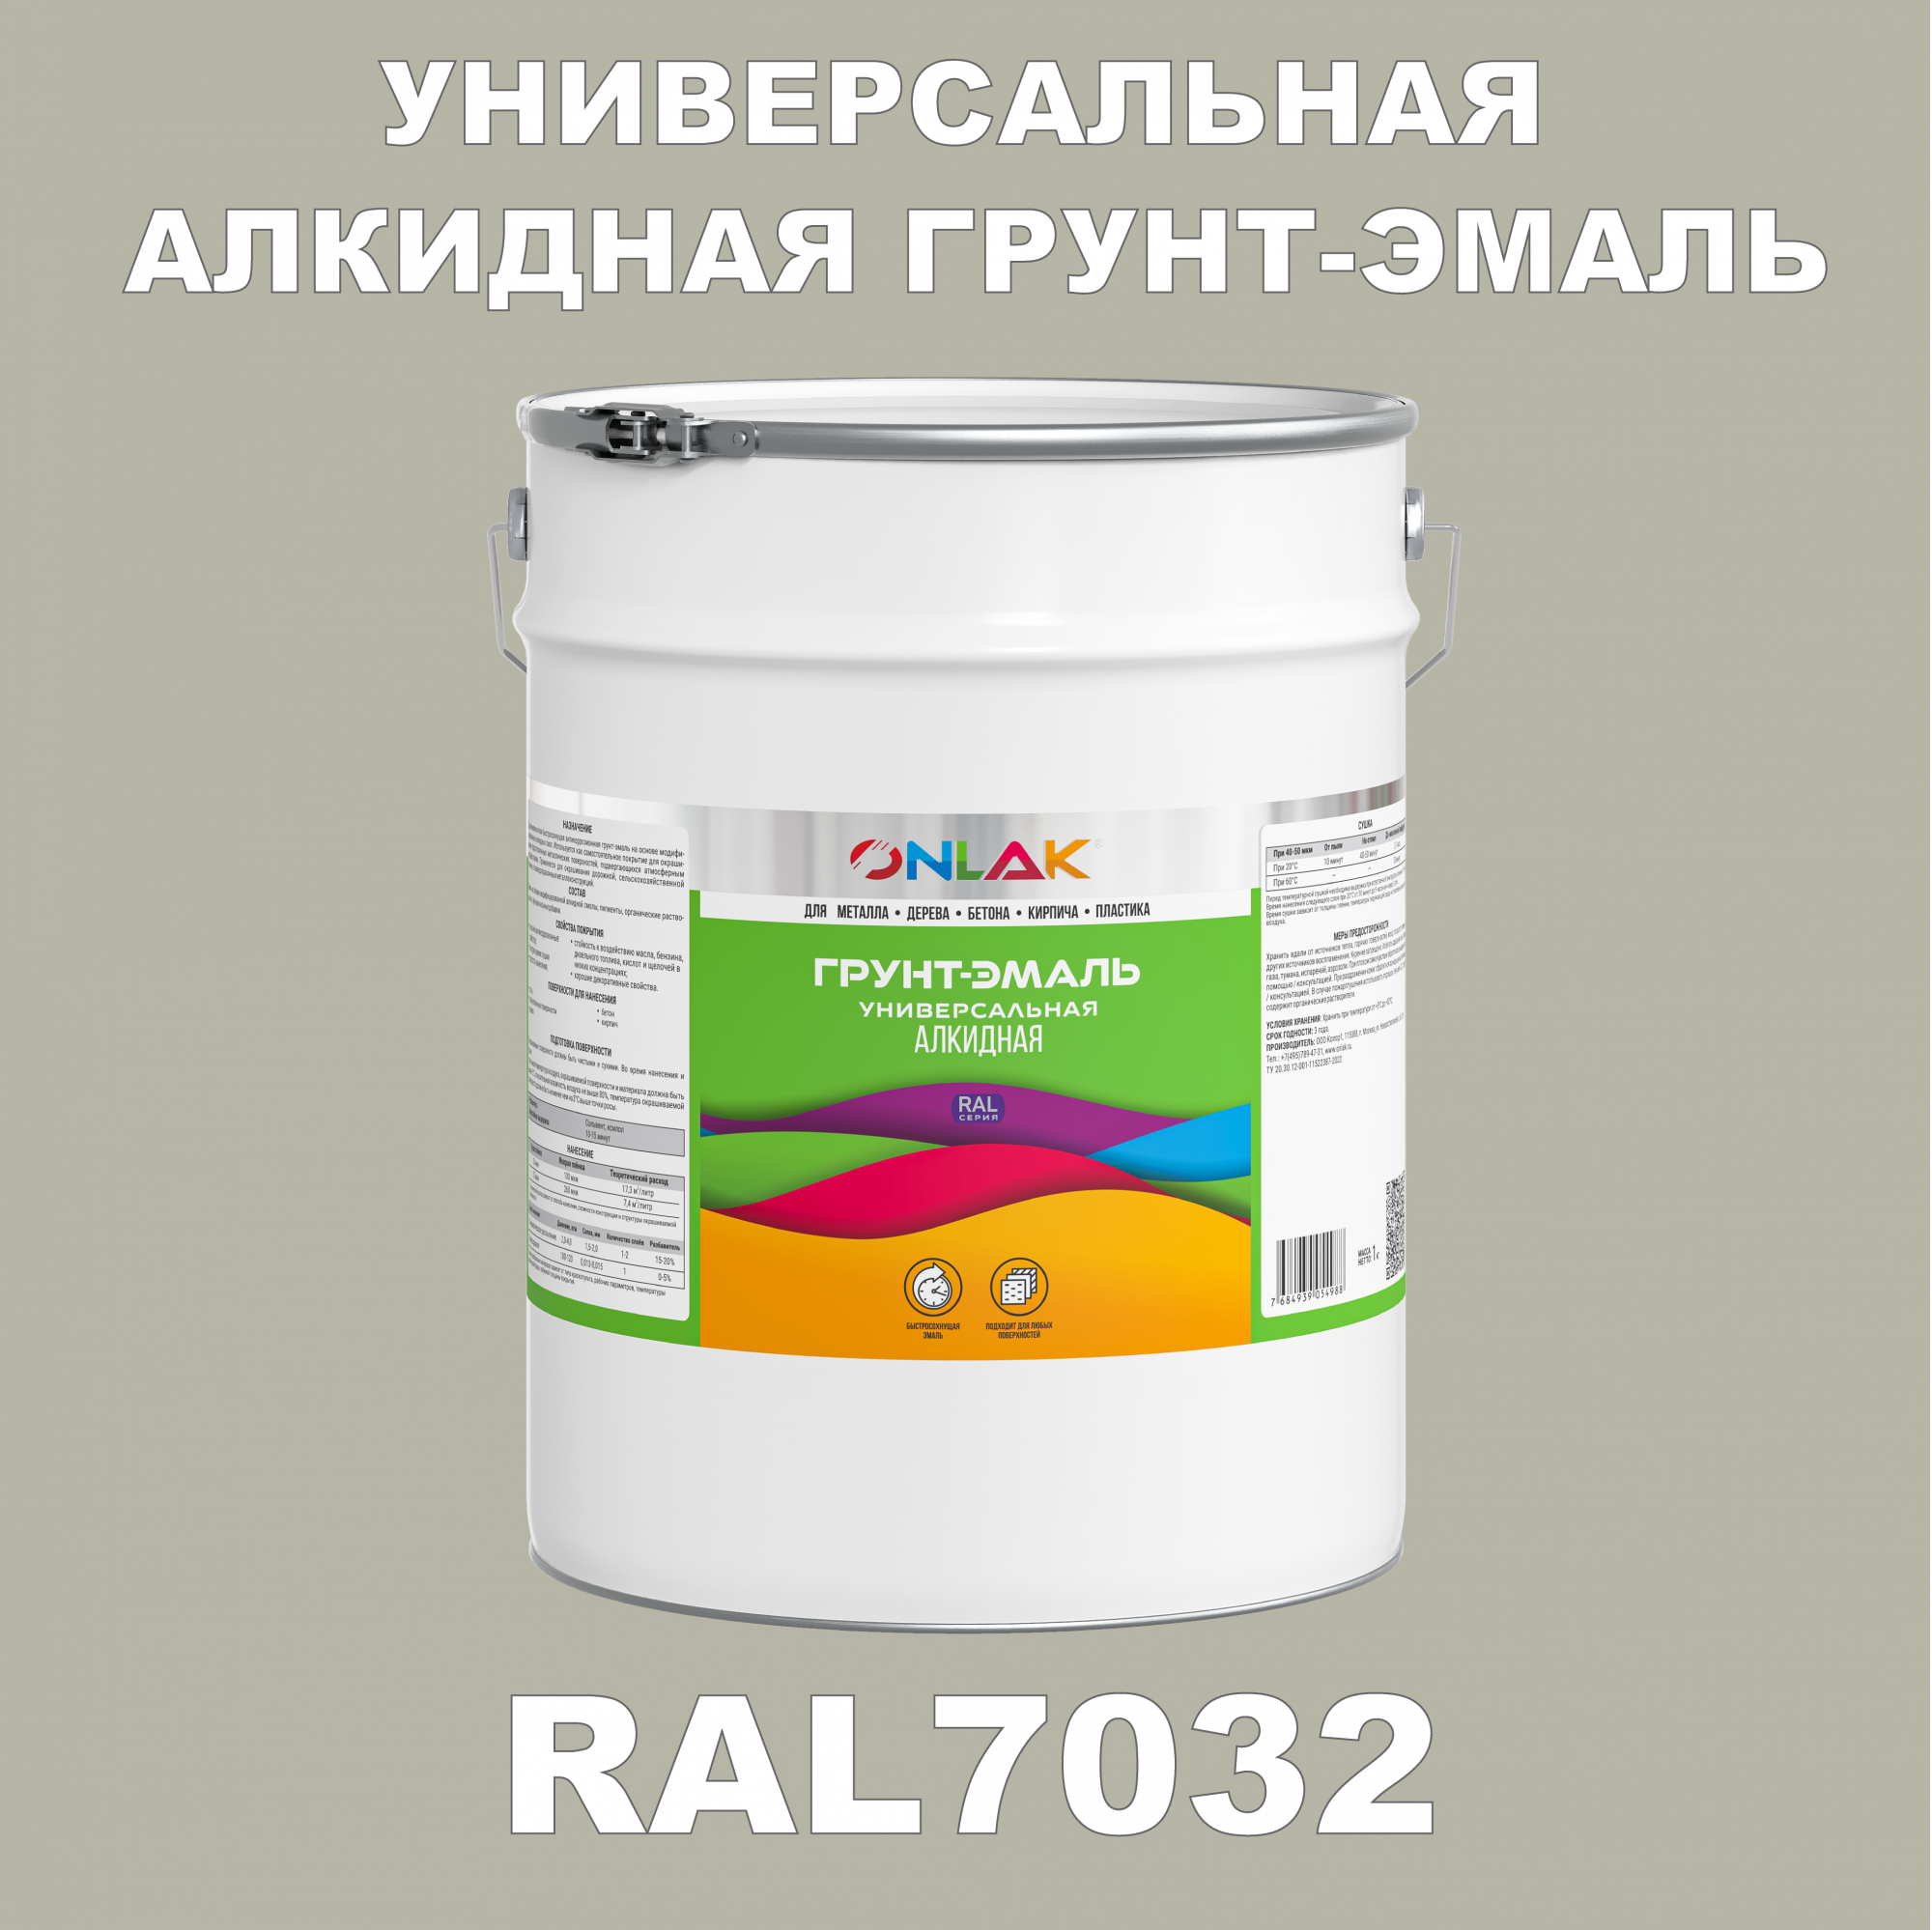 Грунт-эмаль ONLAK 1К RAL7032 антикоррозионная алкидная по металлу по ржавчине 20 кг грунт эмаль skladno по ржавчине алкидная желтая 1 8 кг